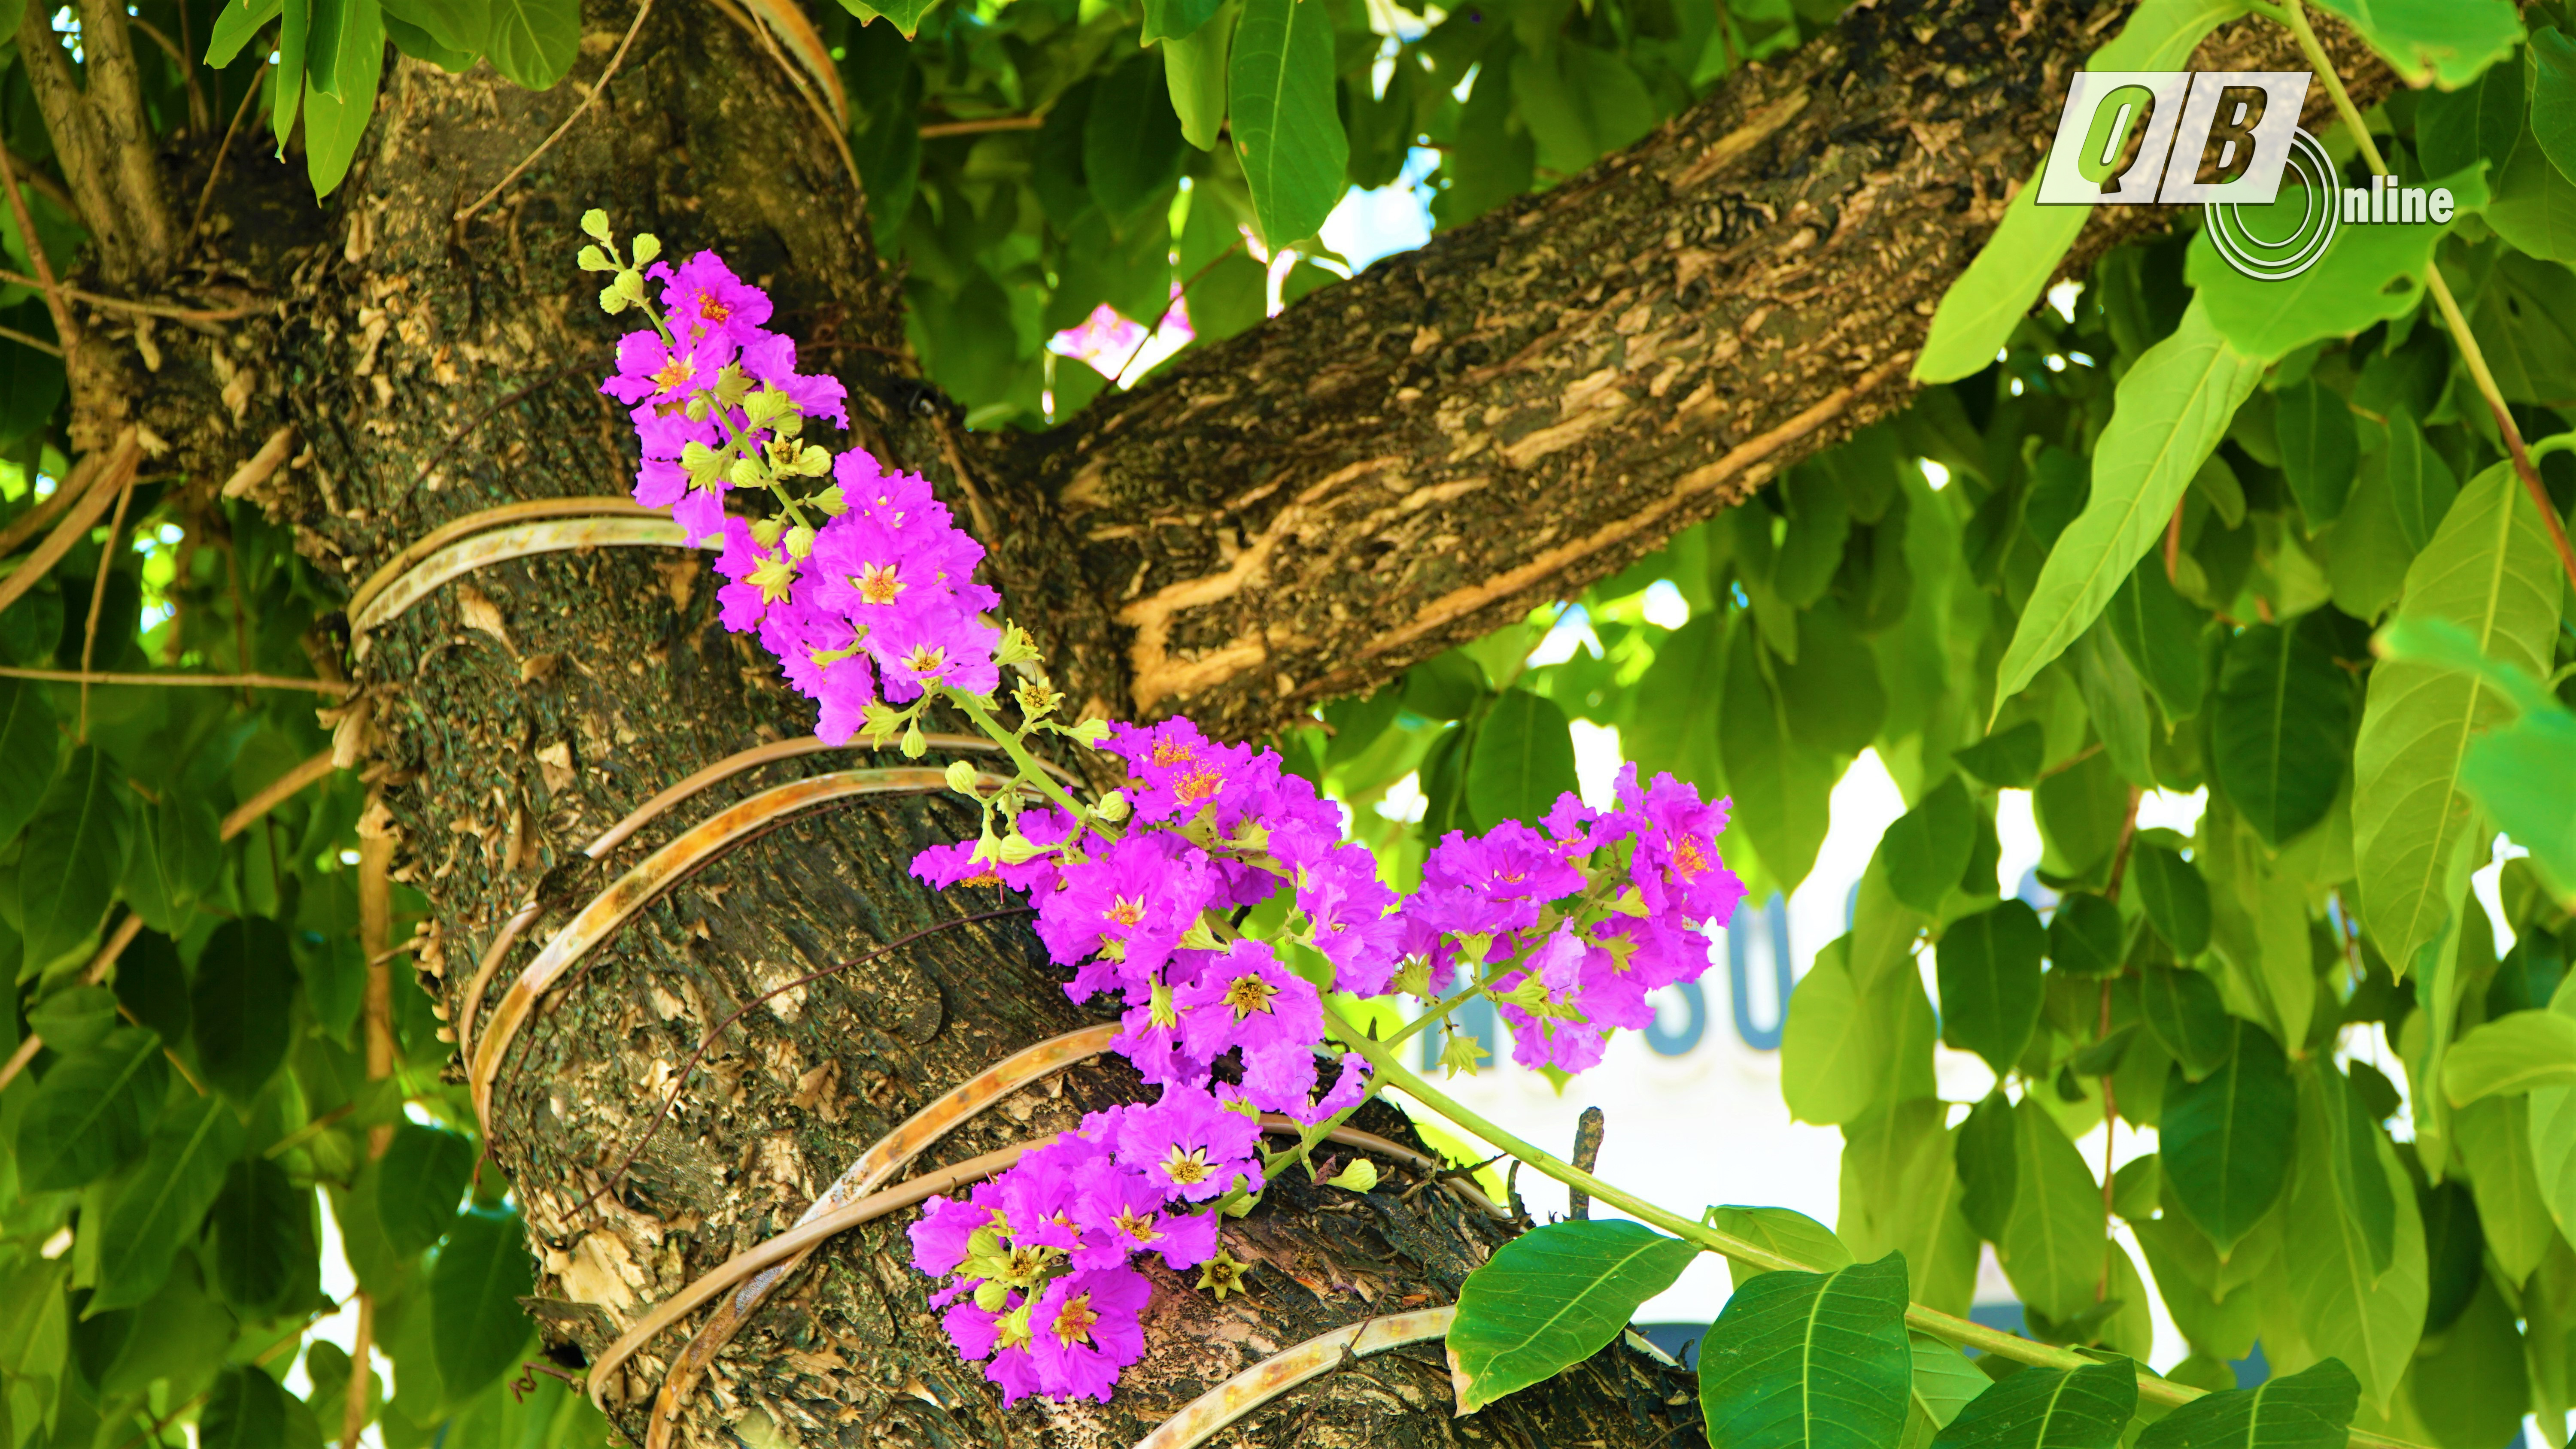 Hoa bằng lăng là loài hoa đặc trưng của miền nhiệt đới Nam Á. Có nguồn gốc từ Ấn Độ, sau du nhập vào Việt Nam và được trồng nhiều ở các thành phố lớn như Hà Nội, TPHCM, Đà Lạt...